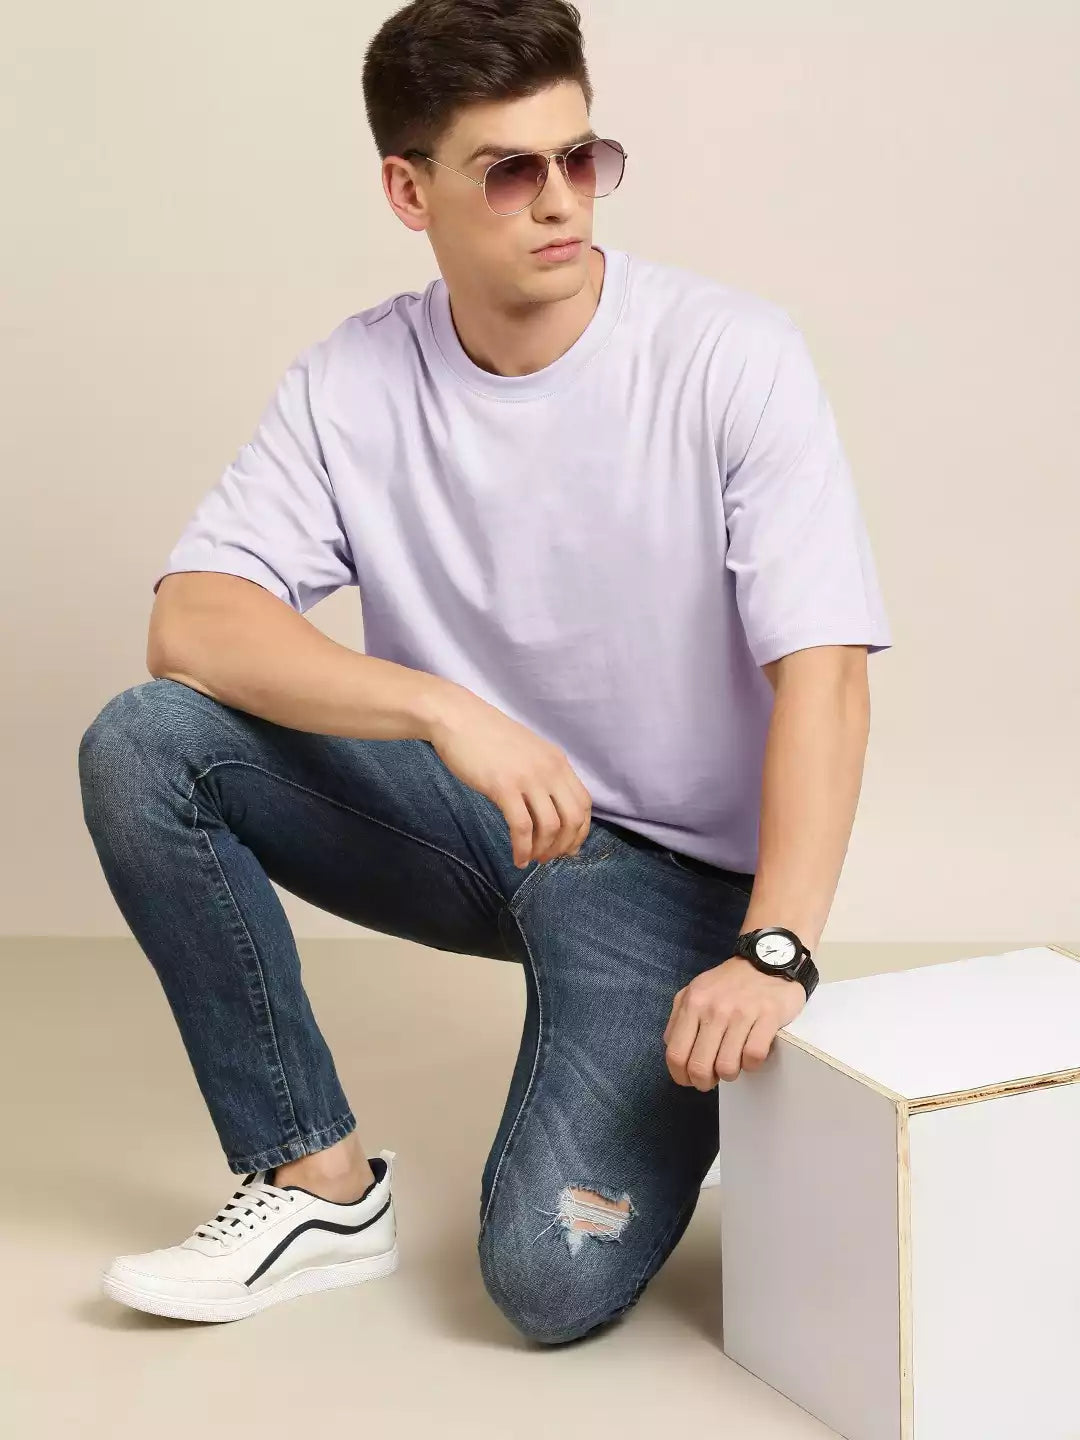 Lavender Color Men's Cotton T-Shirt Plain Half Sleeve Round Neck